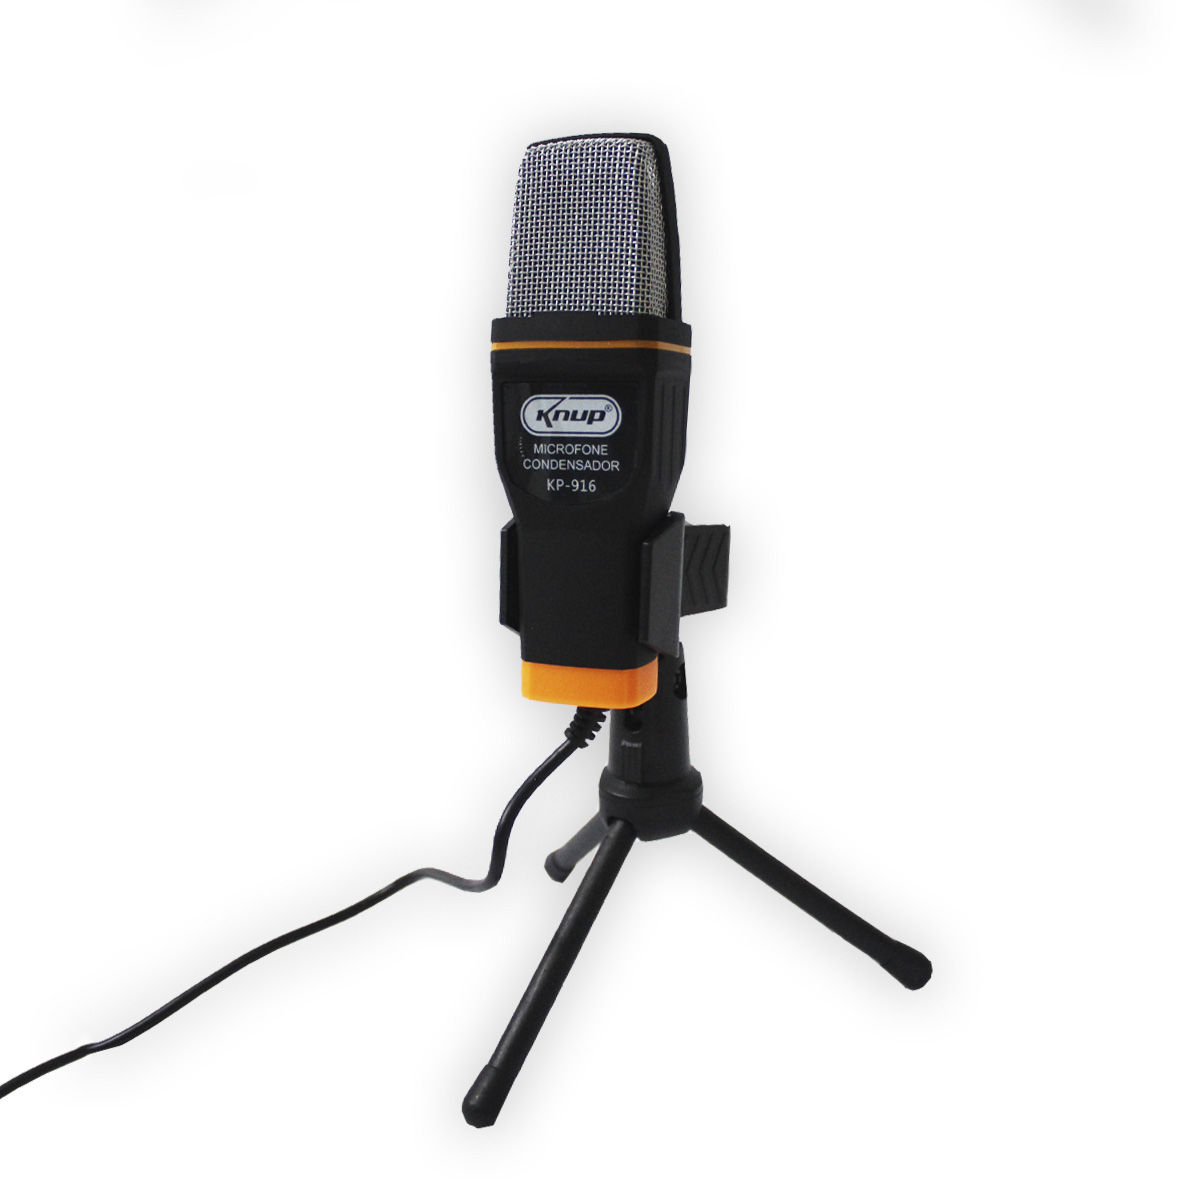 Microfone Condensador USB Knup KP-916 - Cabo 1,35m - Ideal para Mesa de Gravação e vídeos Youtube